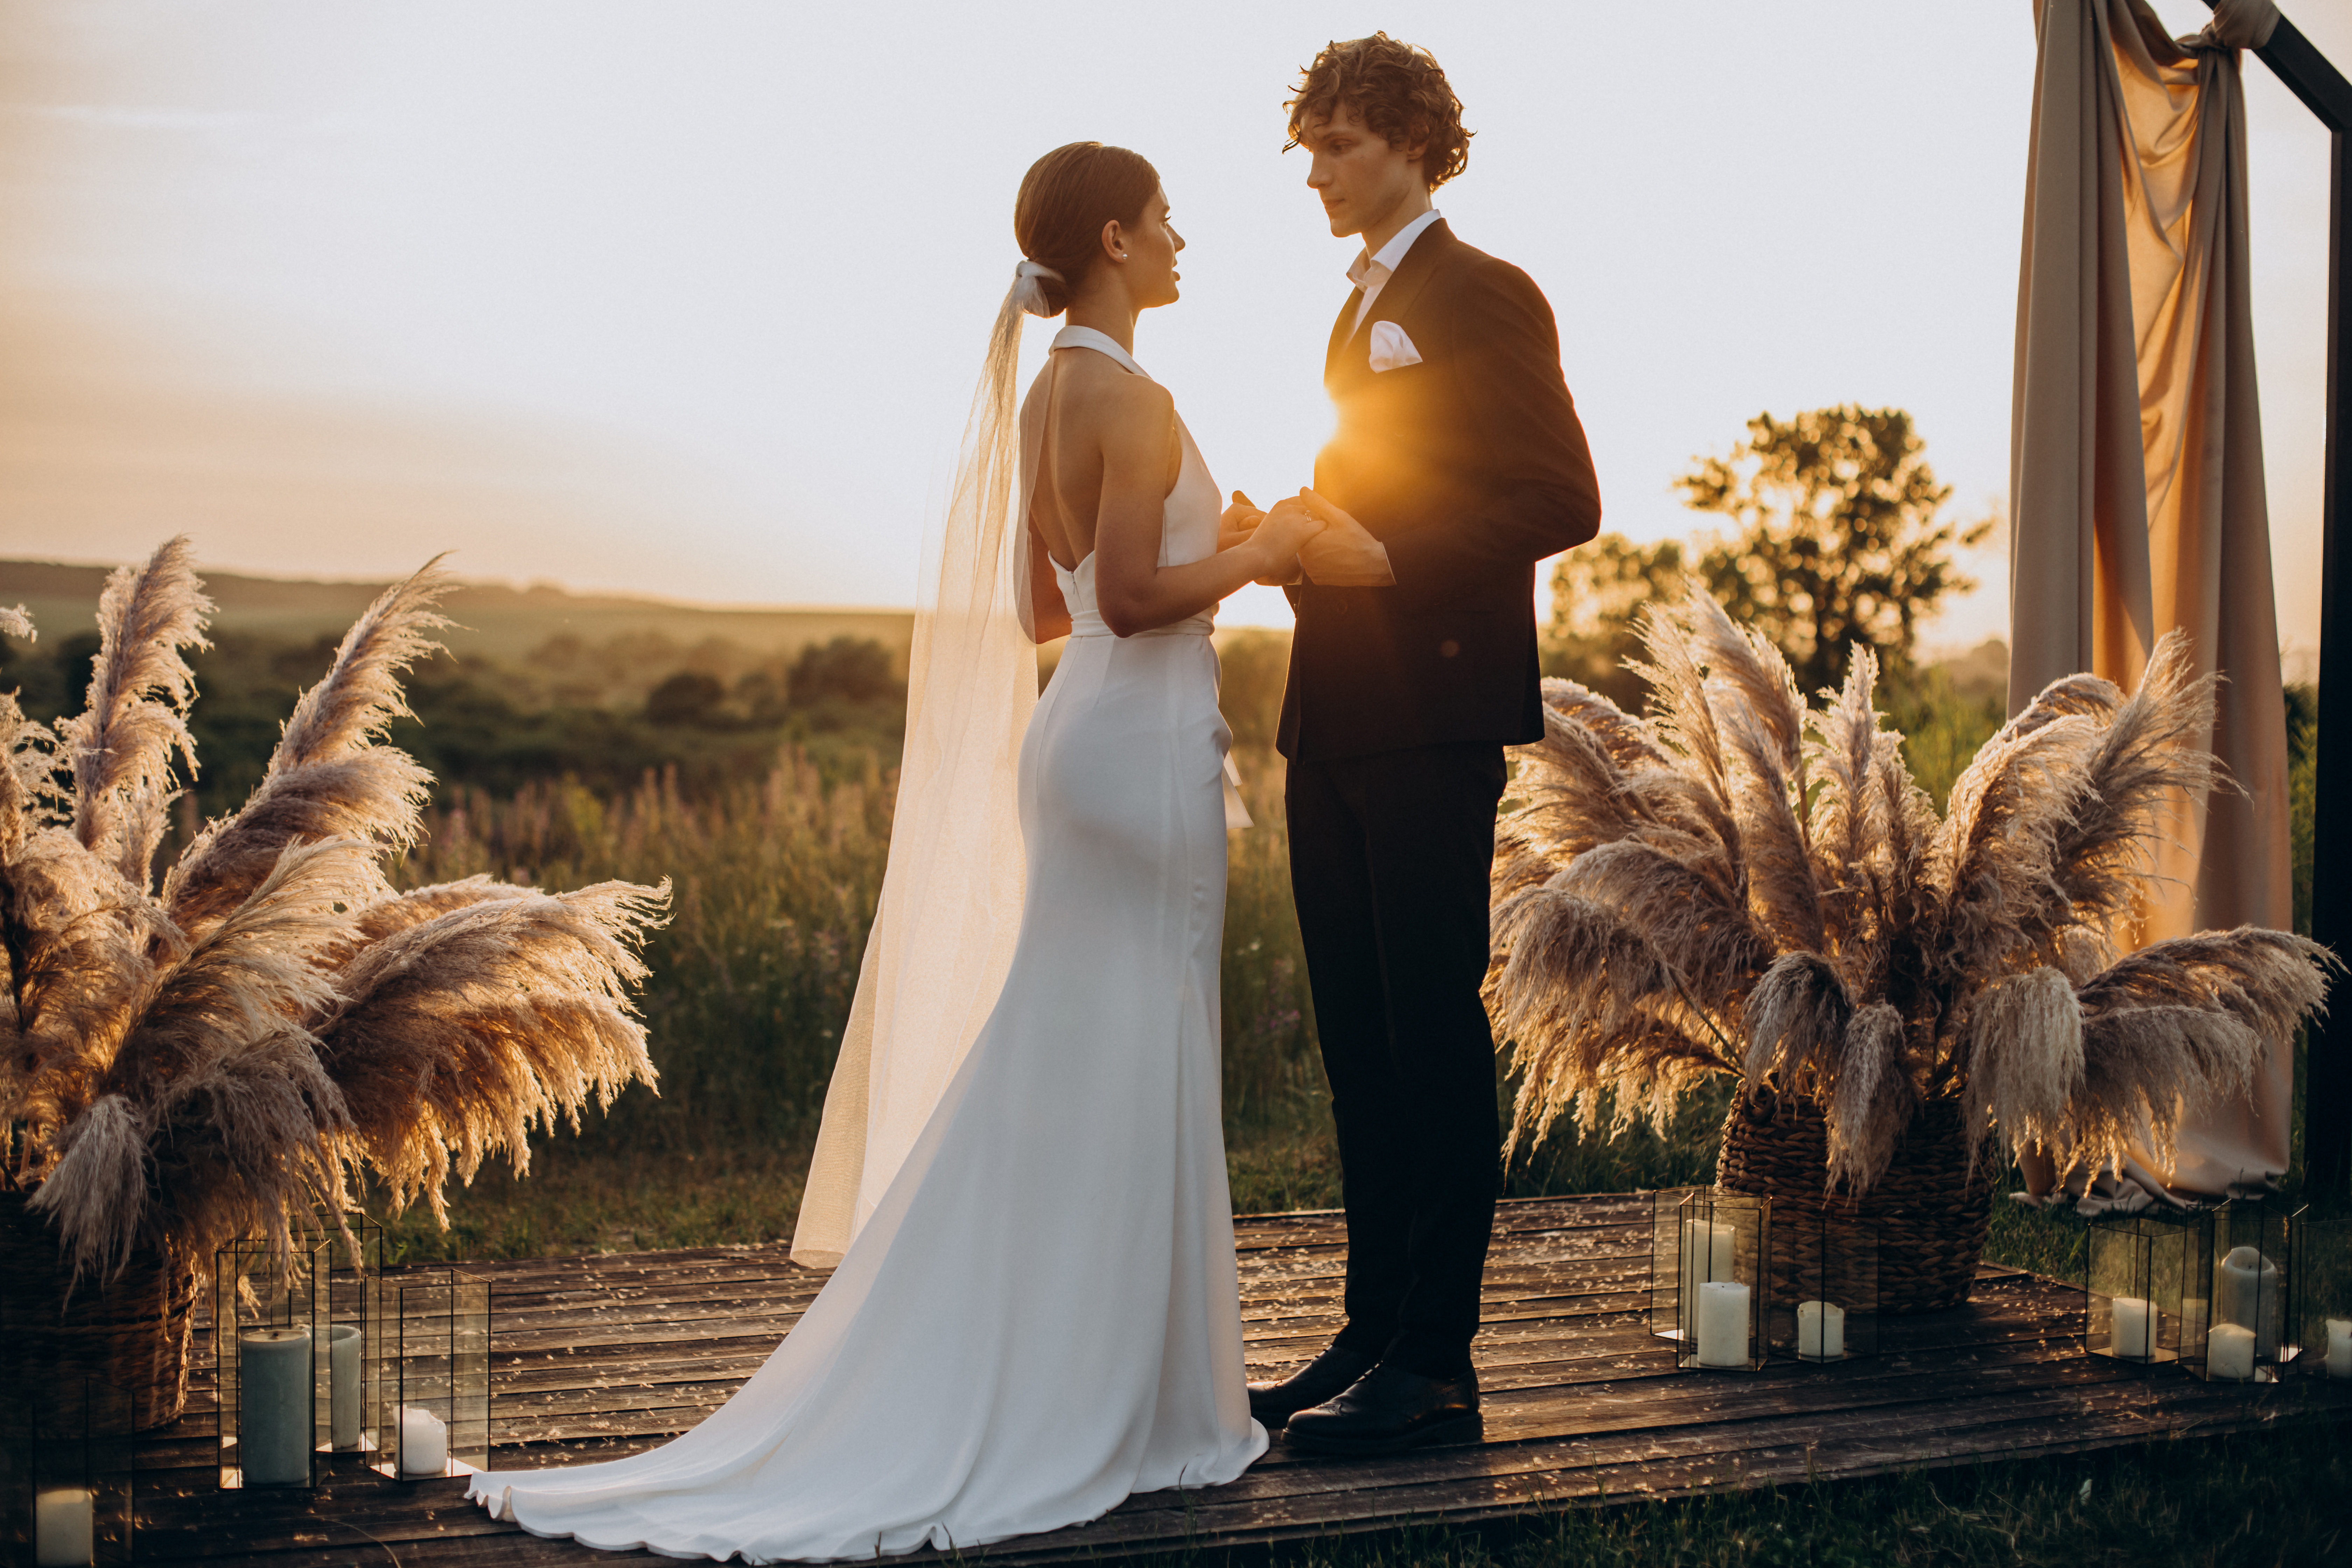 Pareja en su boda | Foto: Shutterstock